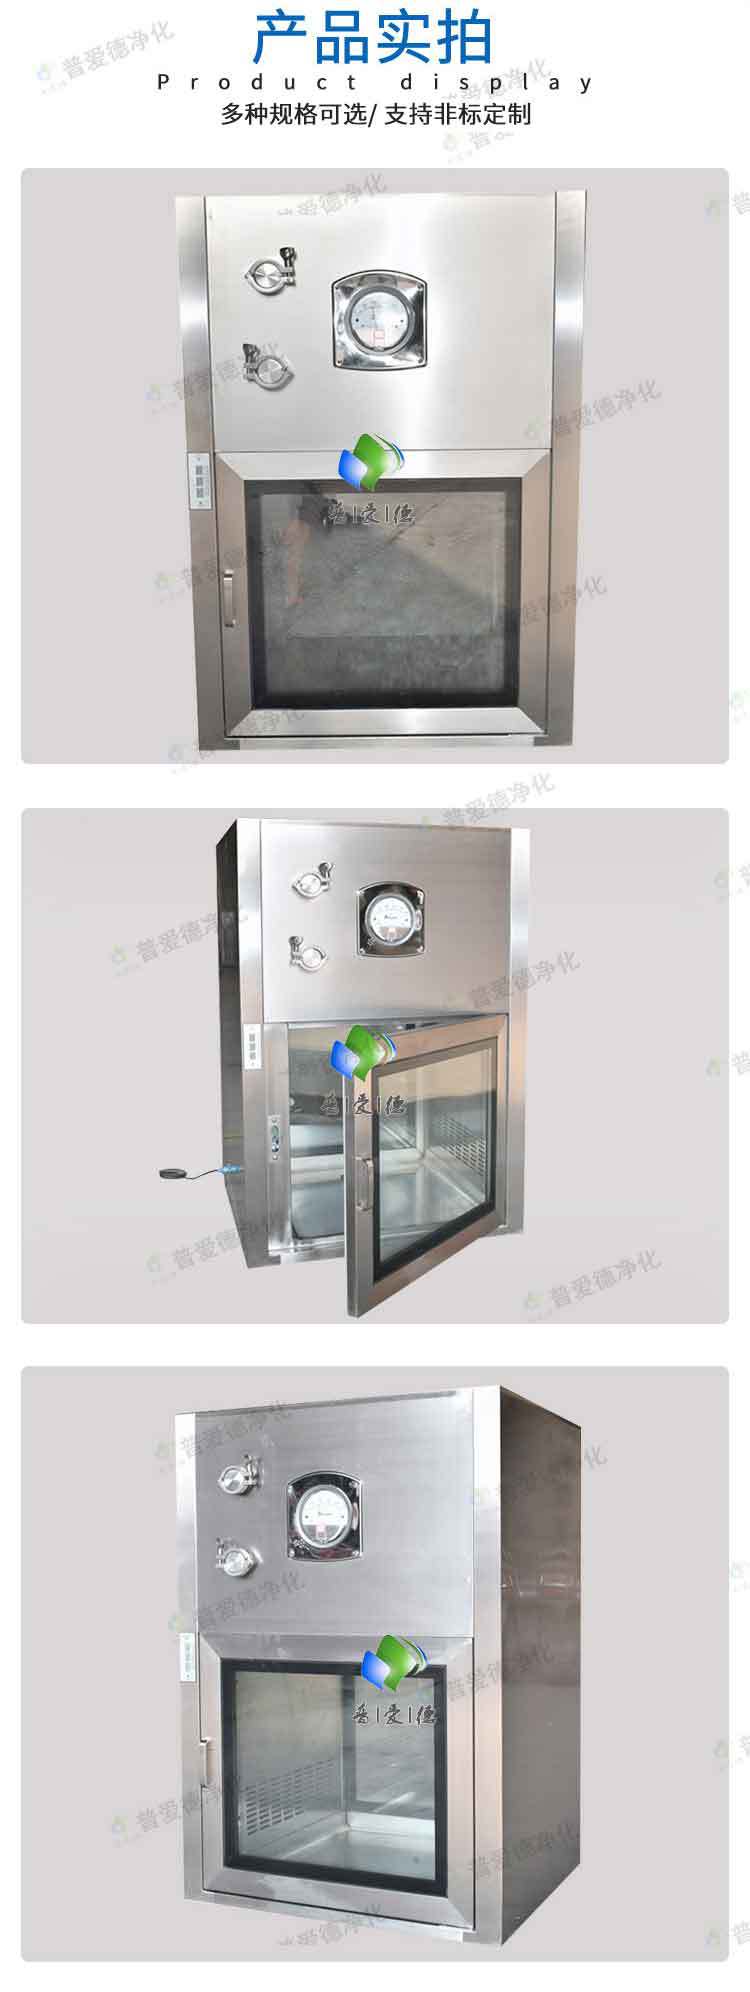 不锈钢传递窗机械互锁传递窗紫外线消毒传递窗